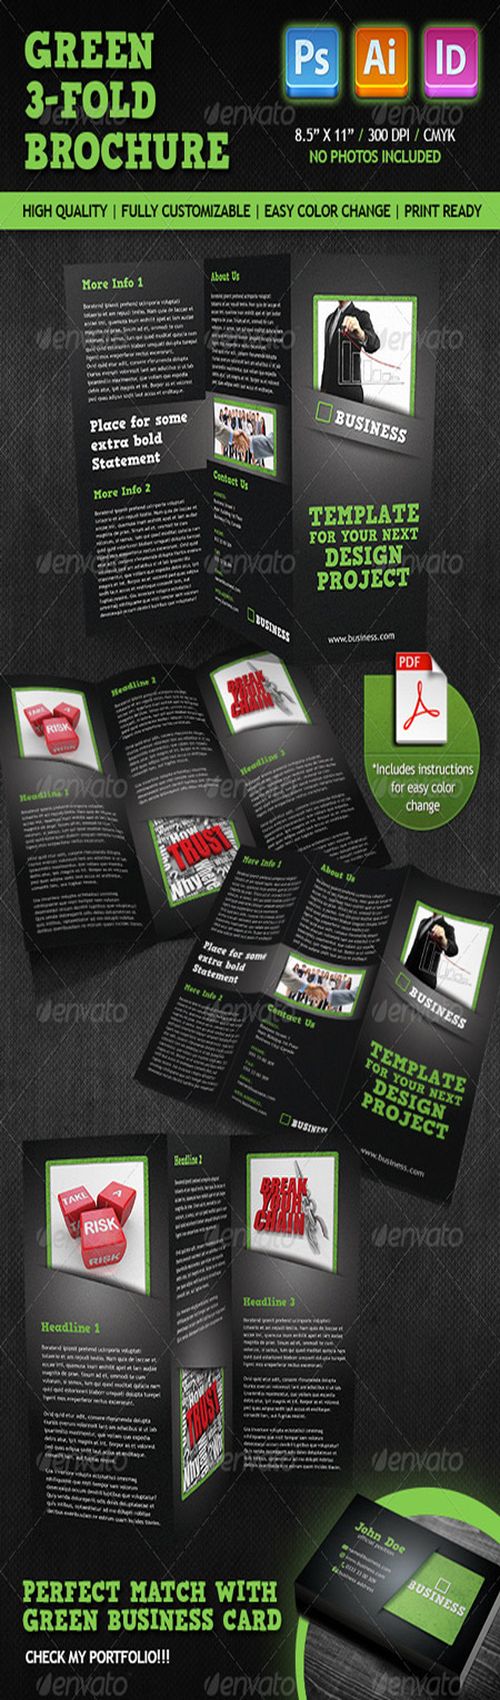 PSD - GraphicRiver Green Tri-fold Brochure